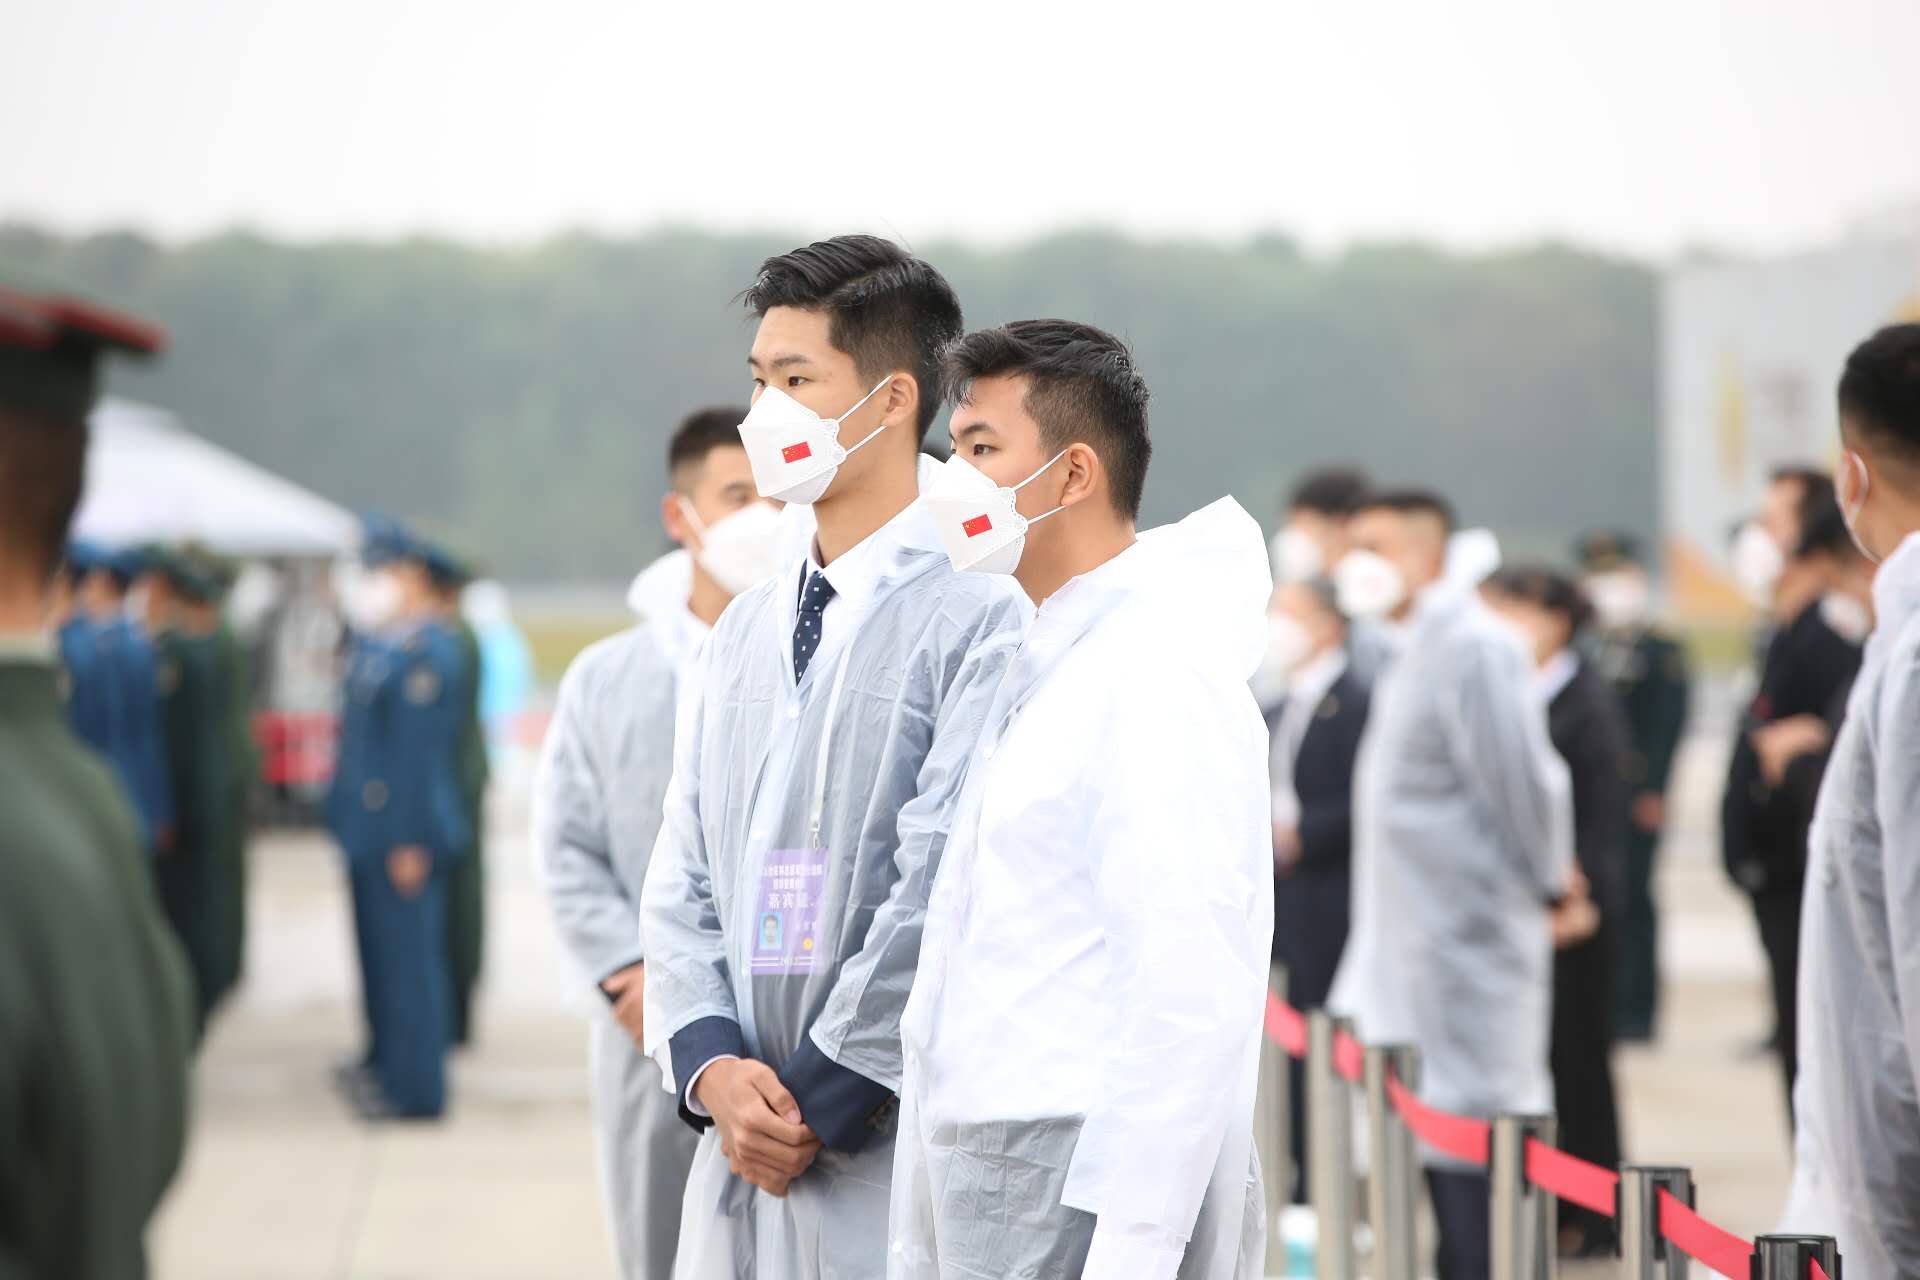 英烈迎回仪式首有香港学生参加 两代“少年”跨时空传爱国情